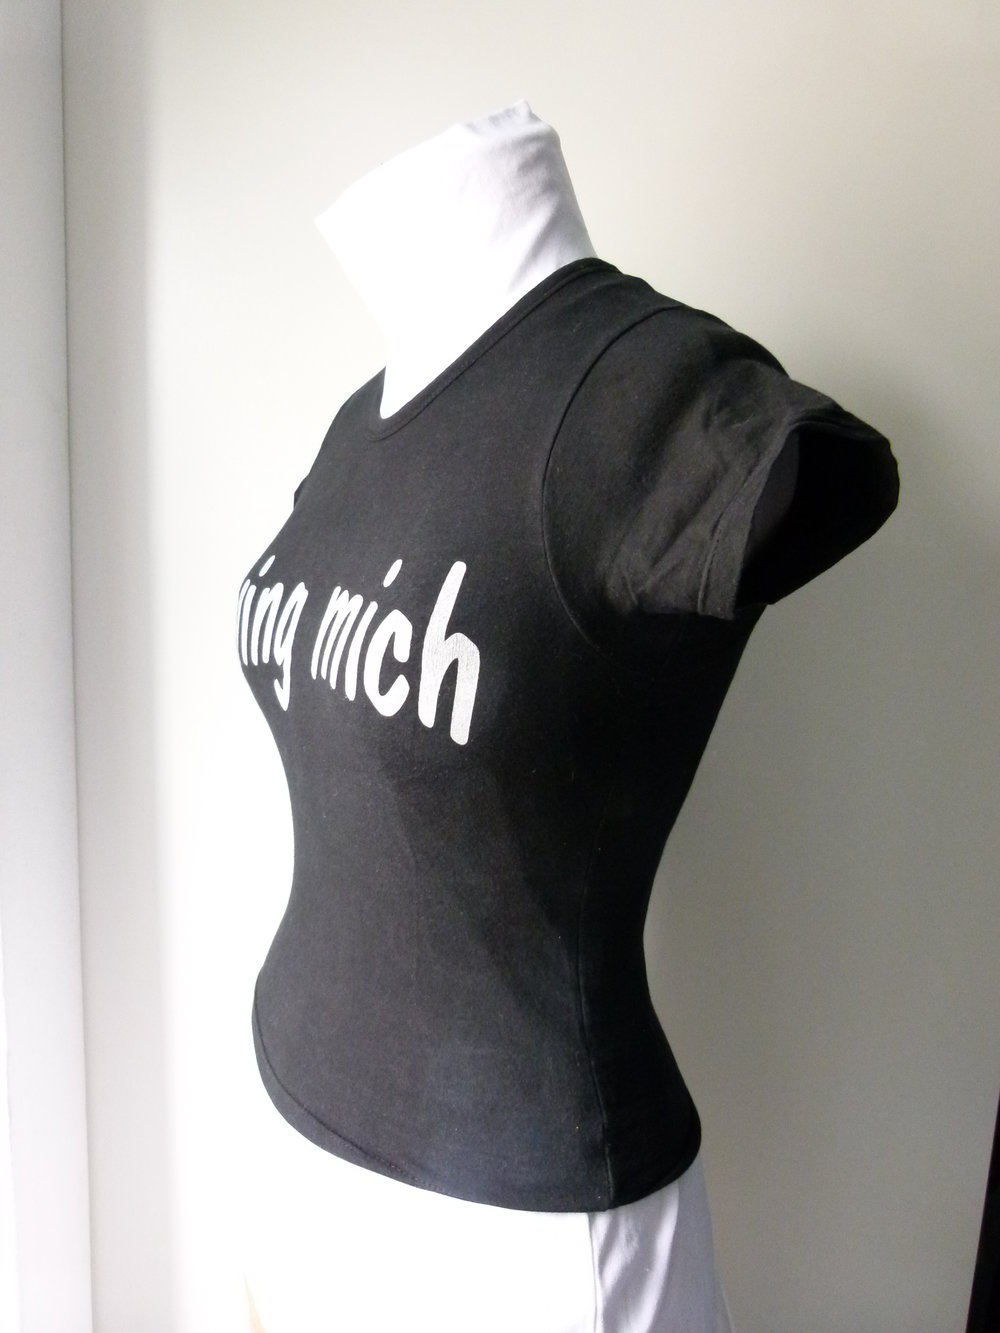 Girlie Shirt 'Zwing mich', schwarz mit silbernen Schriftzug, Gothic Metal Emo Alternative Sprücheshirt T-Shirt